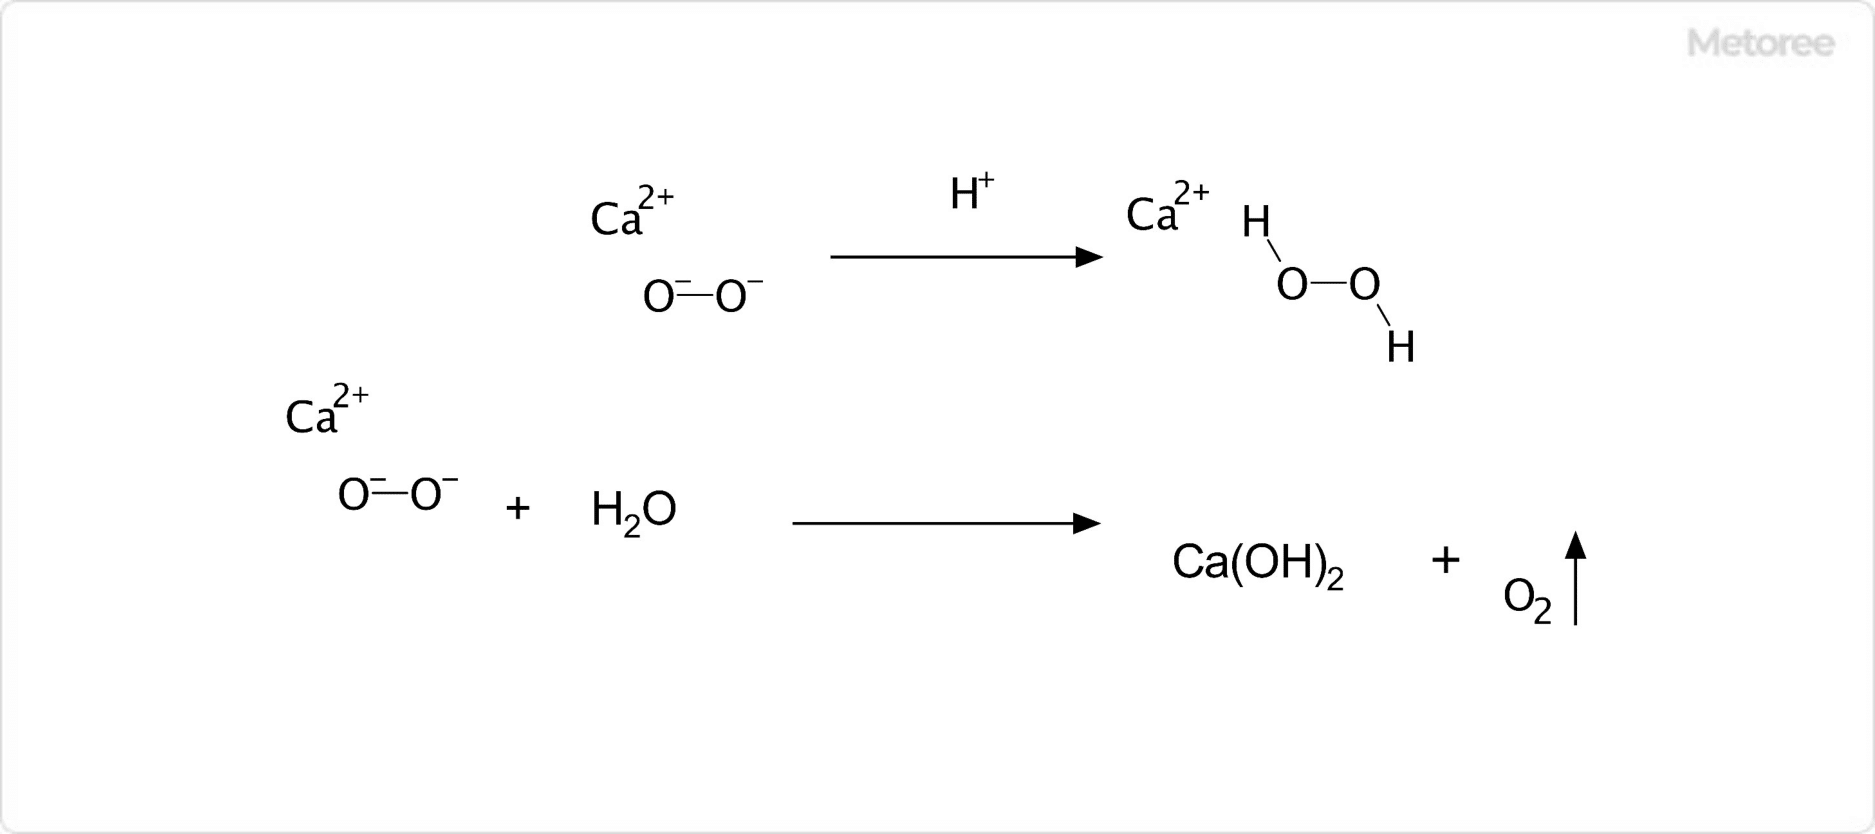 過酸化カルシウムの化学反応